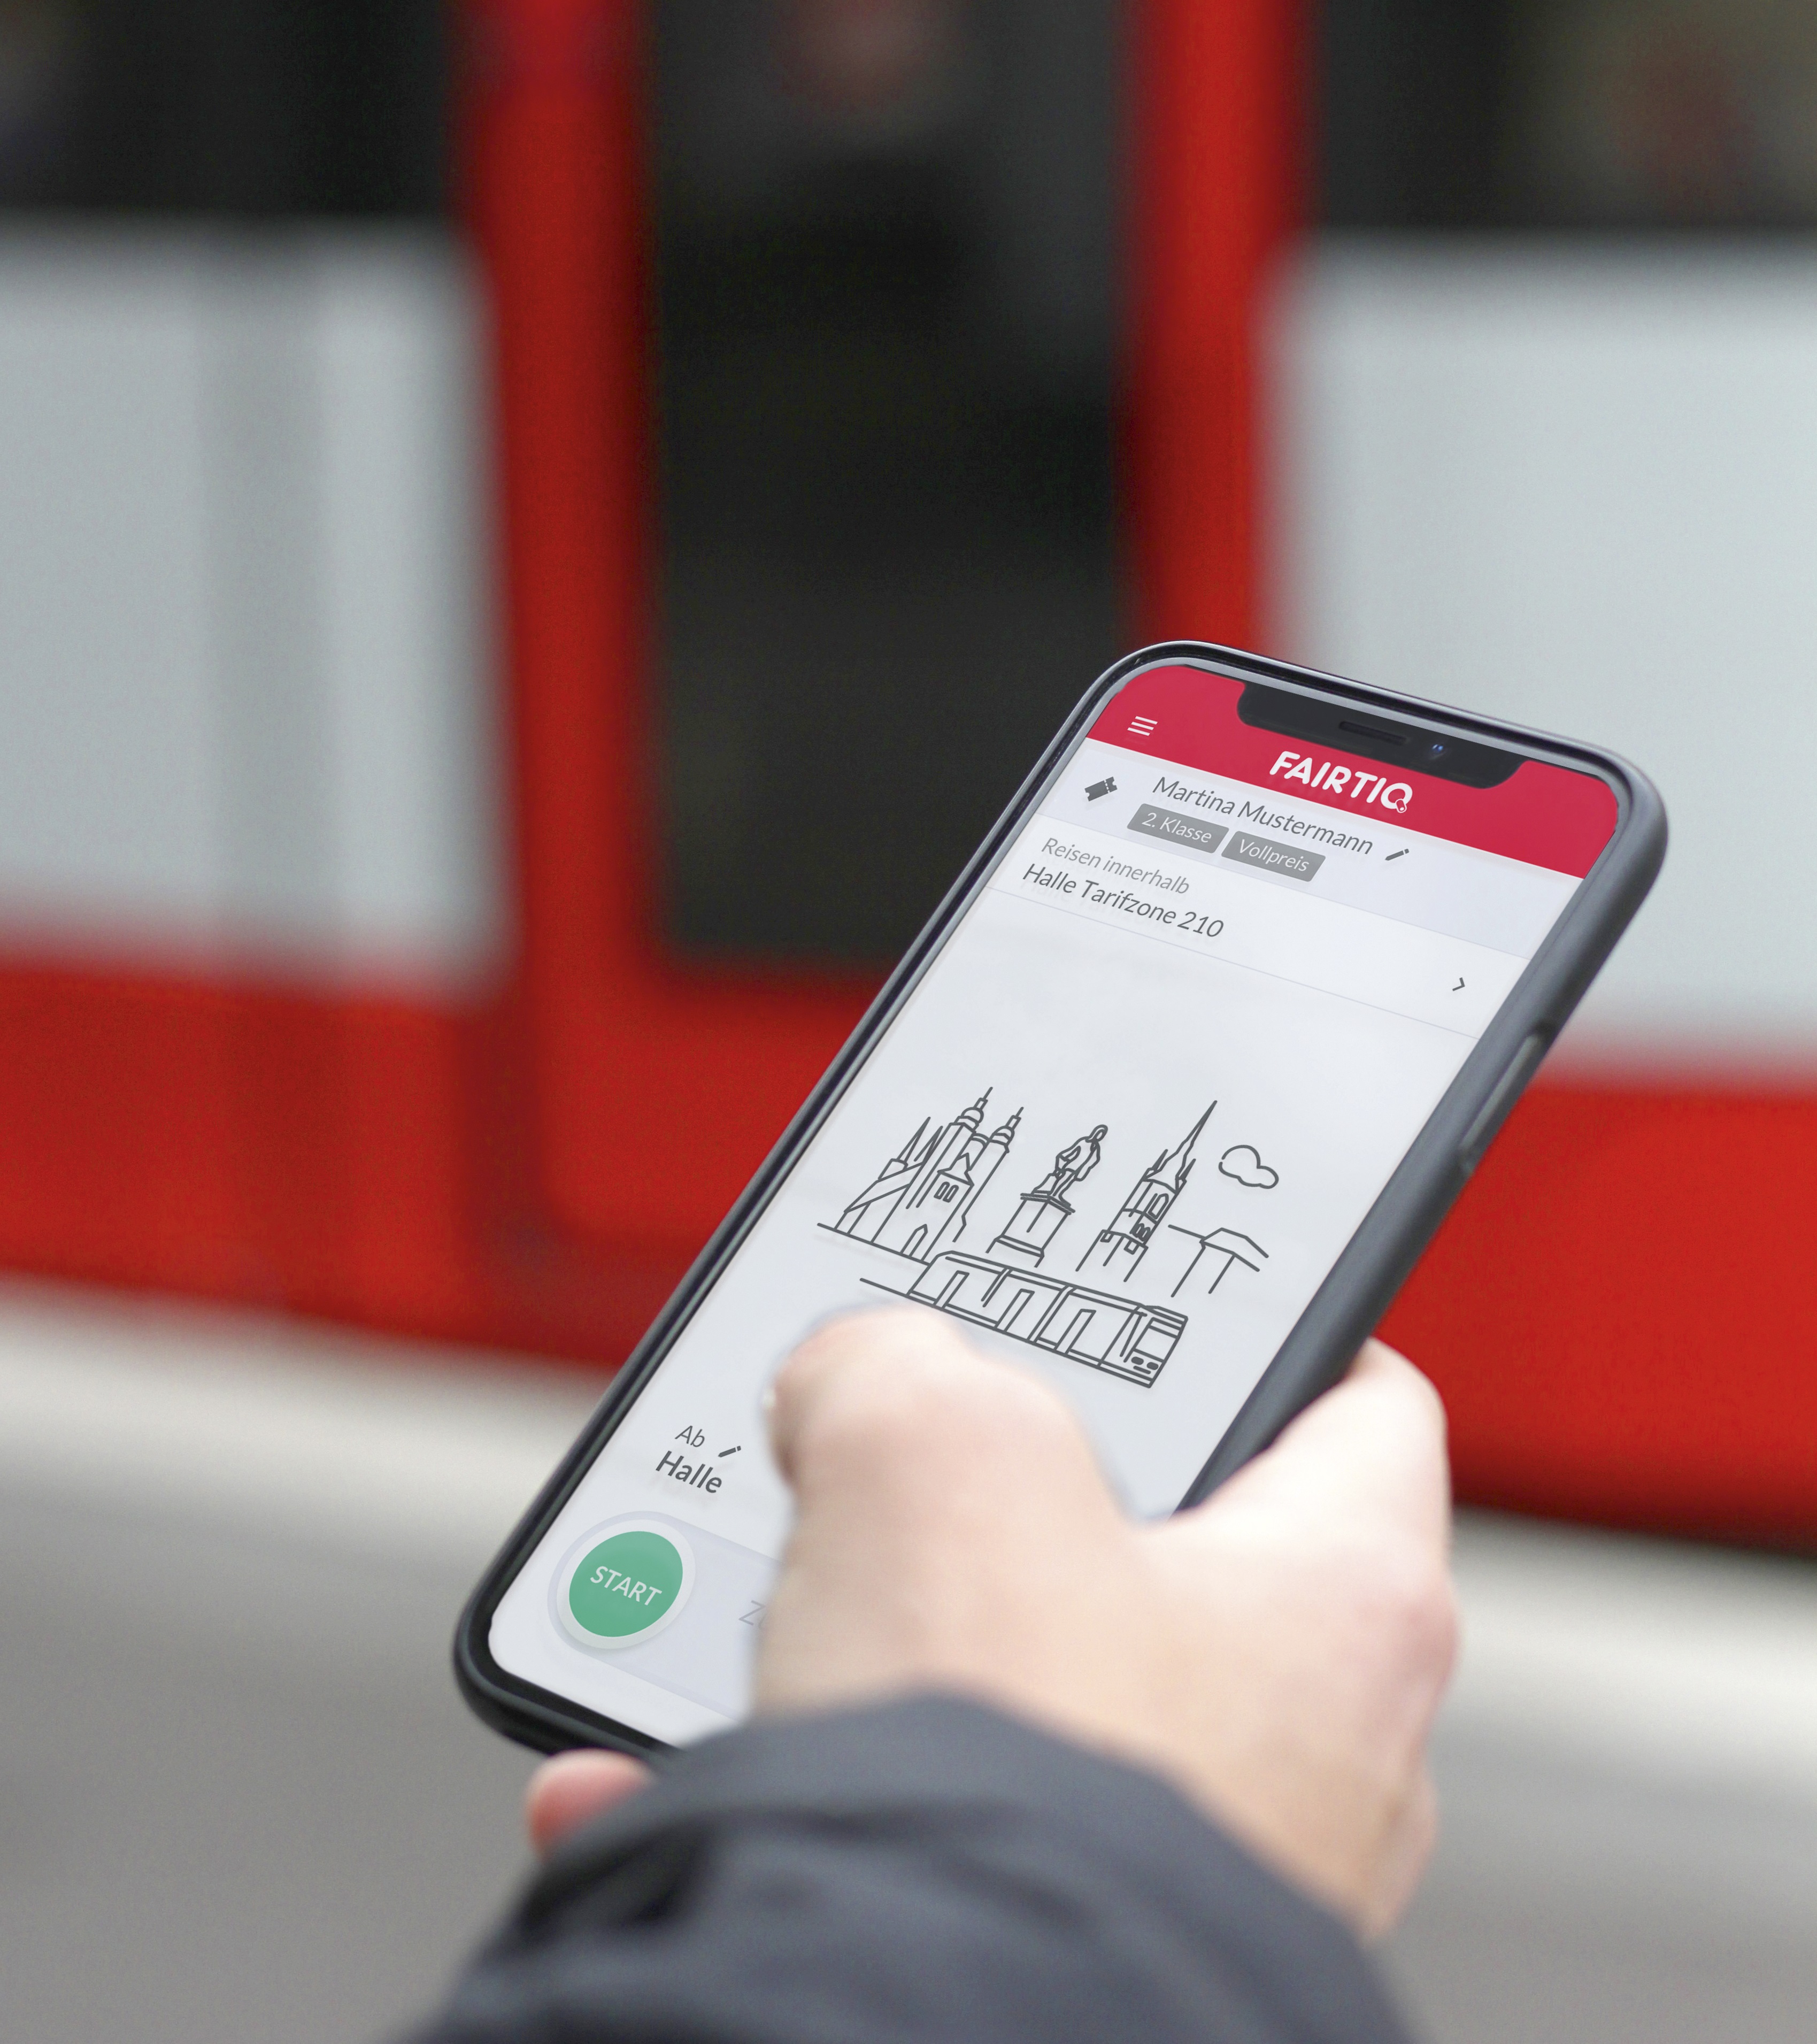 Auf dem Foto befindet sich mittig ein Smartphone, dessen Bildschirm die Startseite von "FAIRTIQ" angezeigt wird. Das Smartphone wird von einer Hand gehalten und im Hintergrund befindet sich eine rote Straßenbahn.